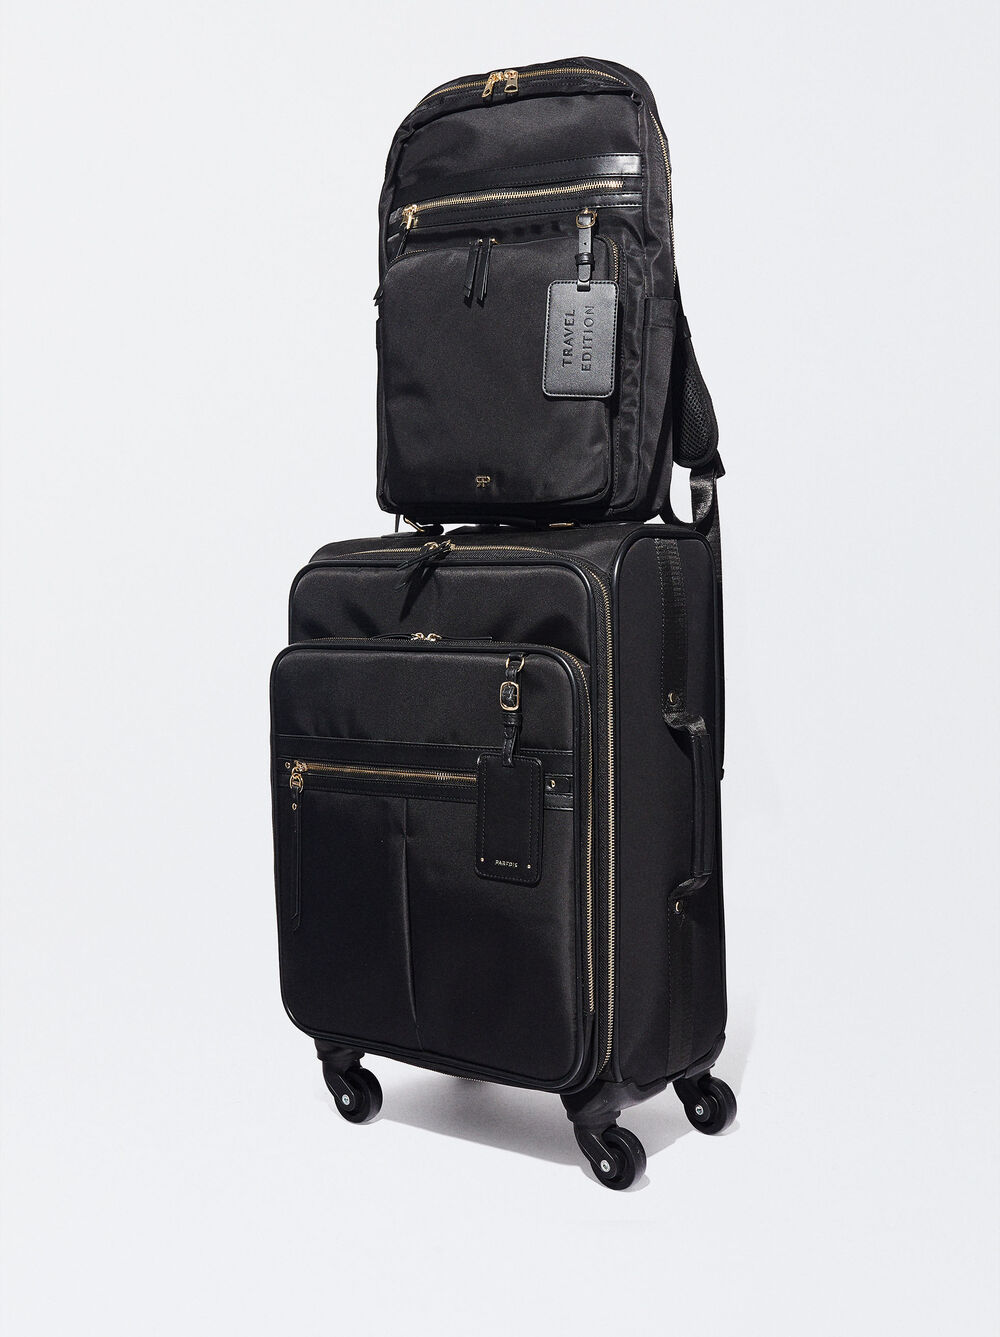 Nylon Backpack For 15” Laptop